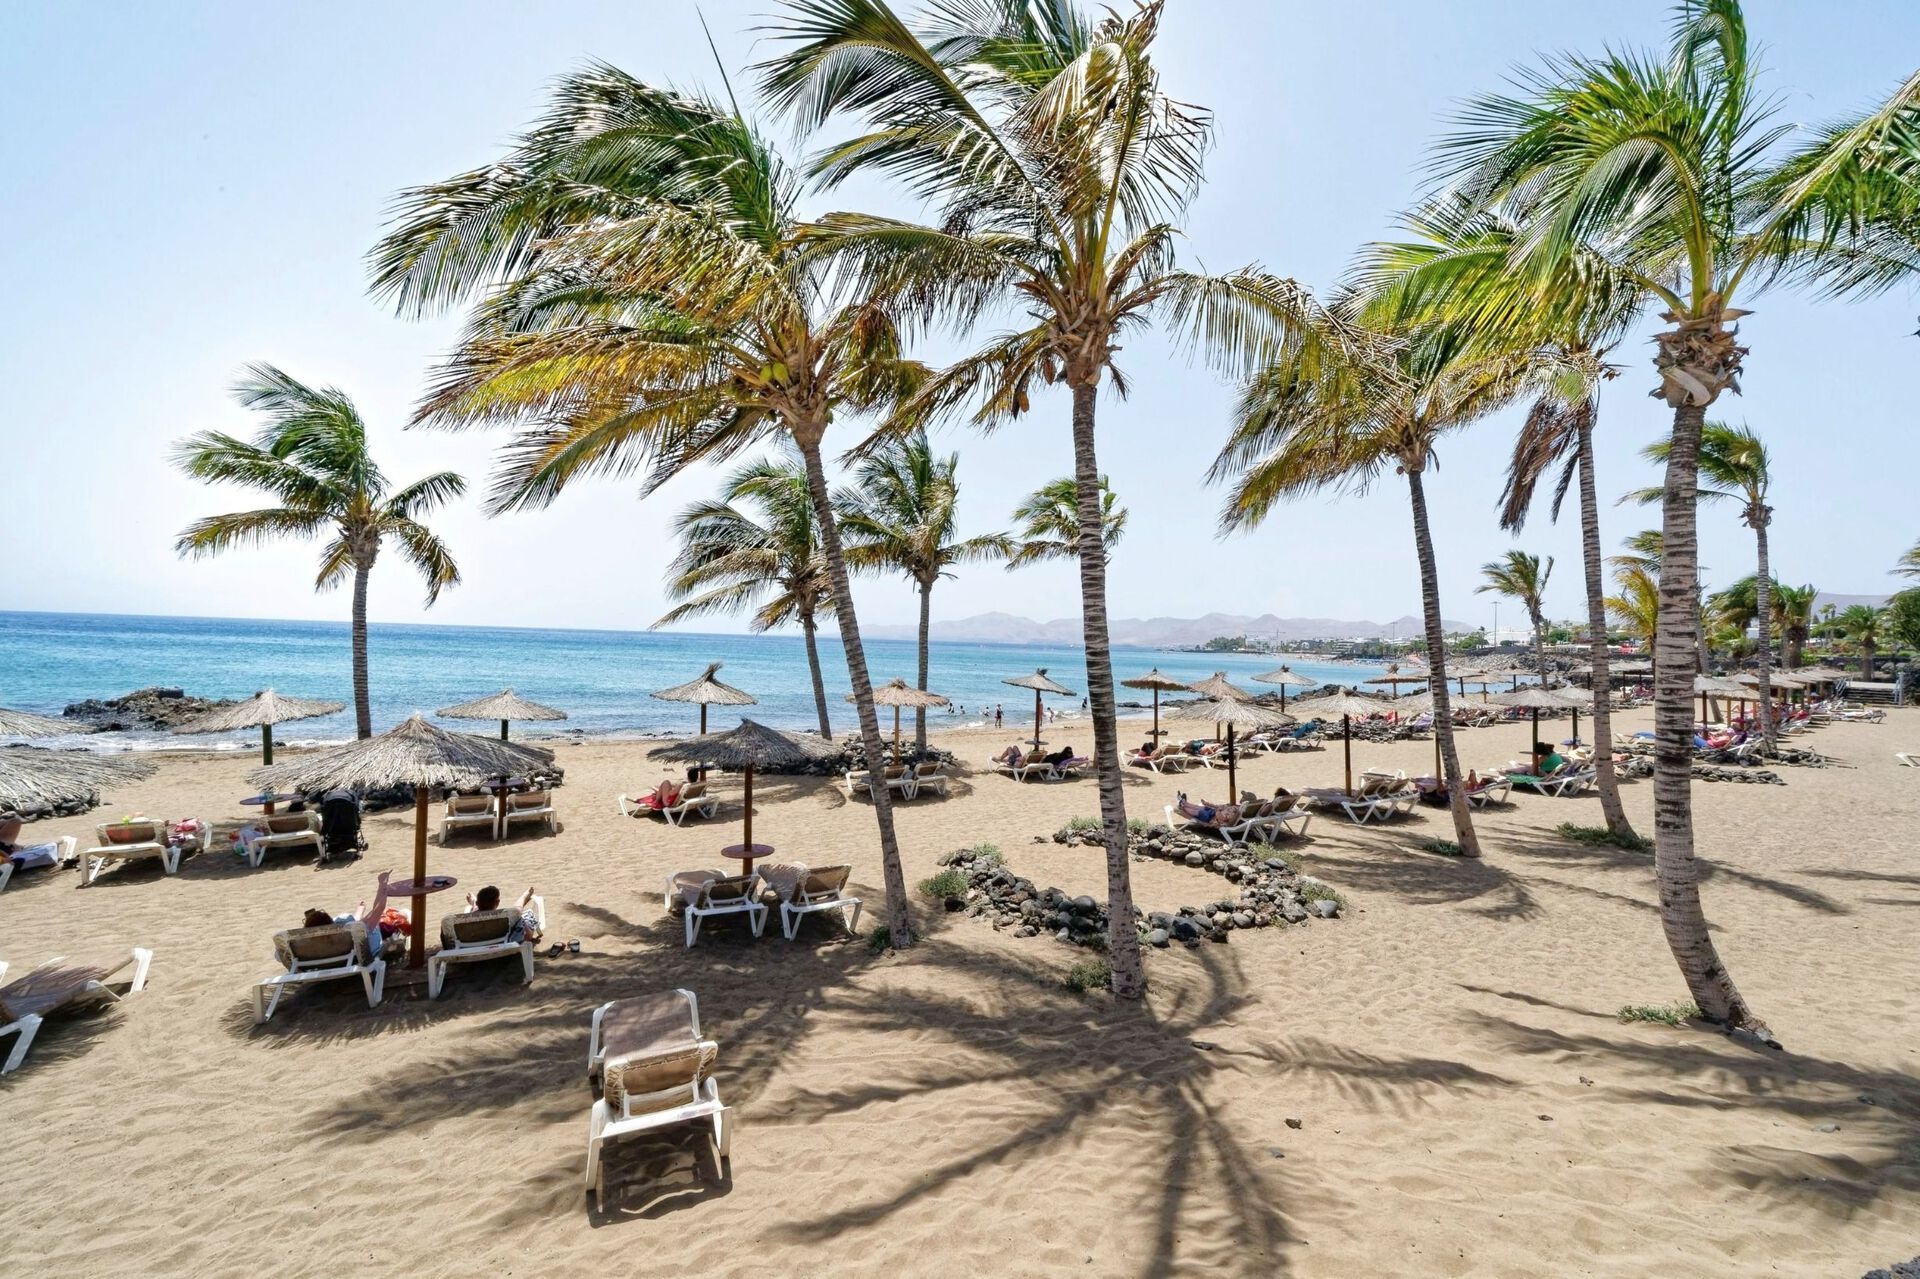 Canaries - Lanzarote - Espagne - Hôtel Labranda Playa Club 2*